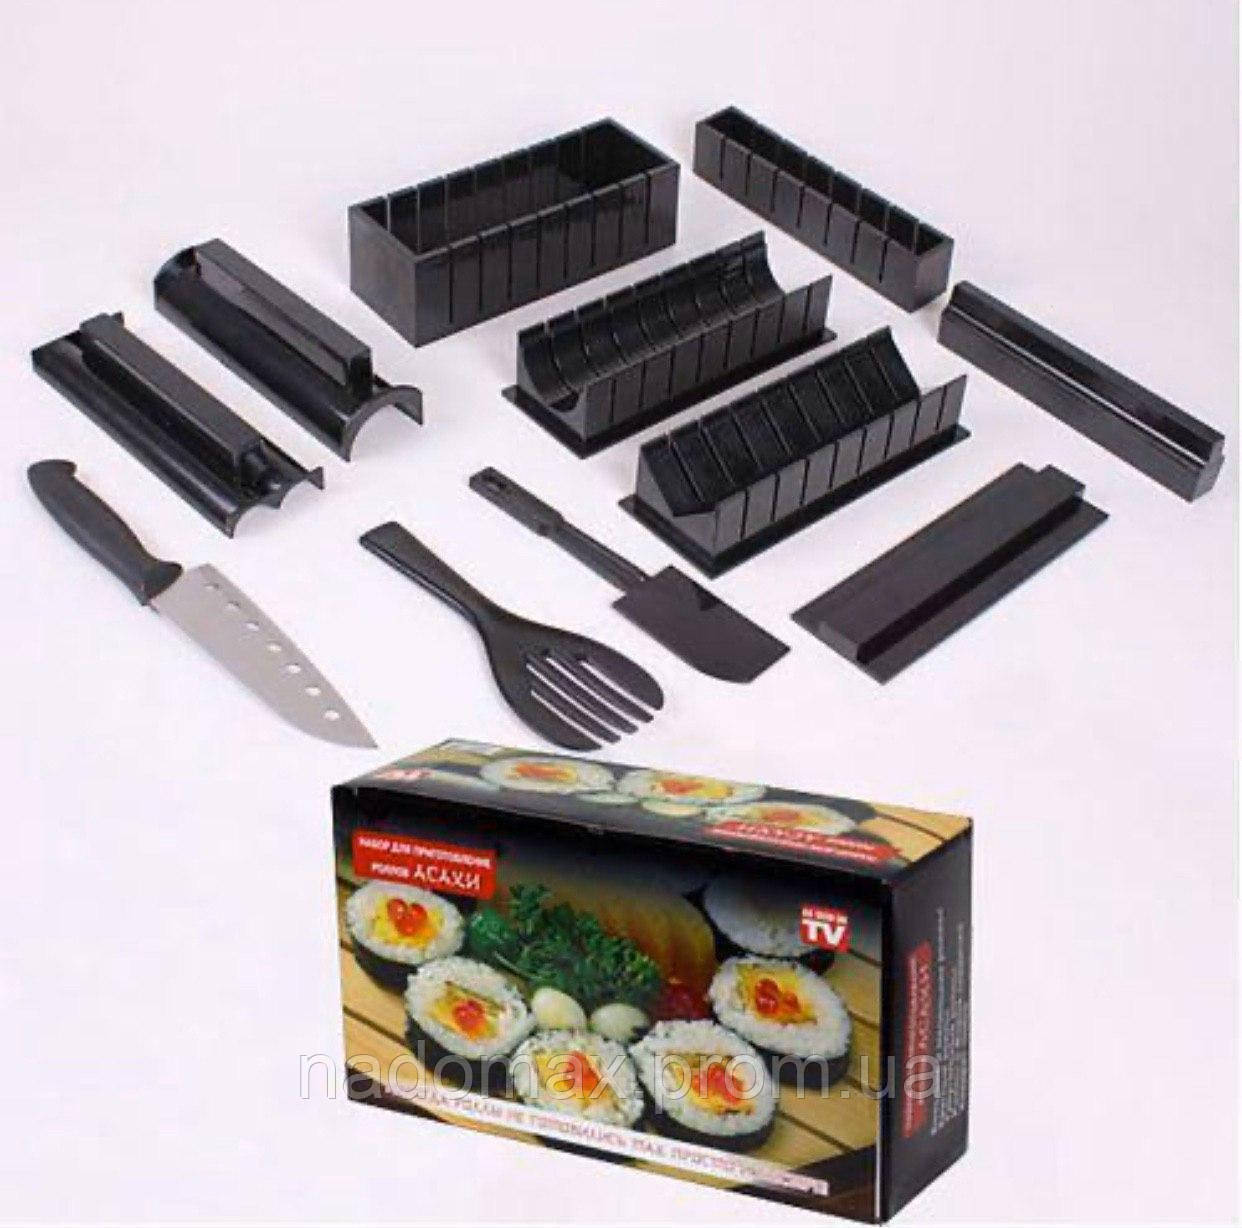 Как делать суши из набора для суши фото 62